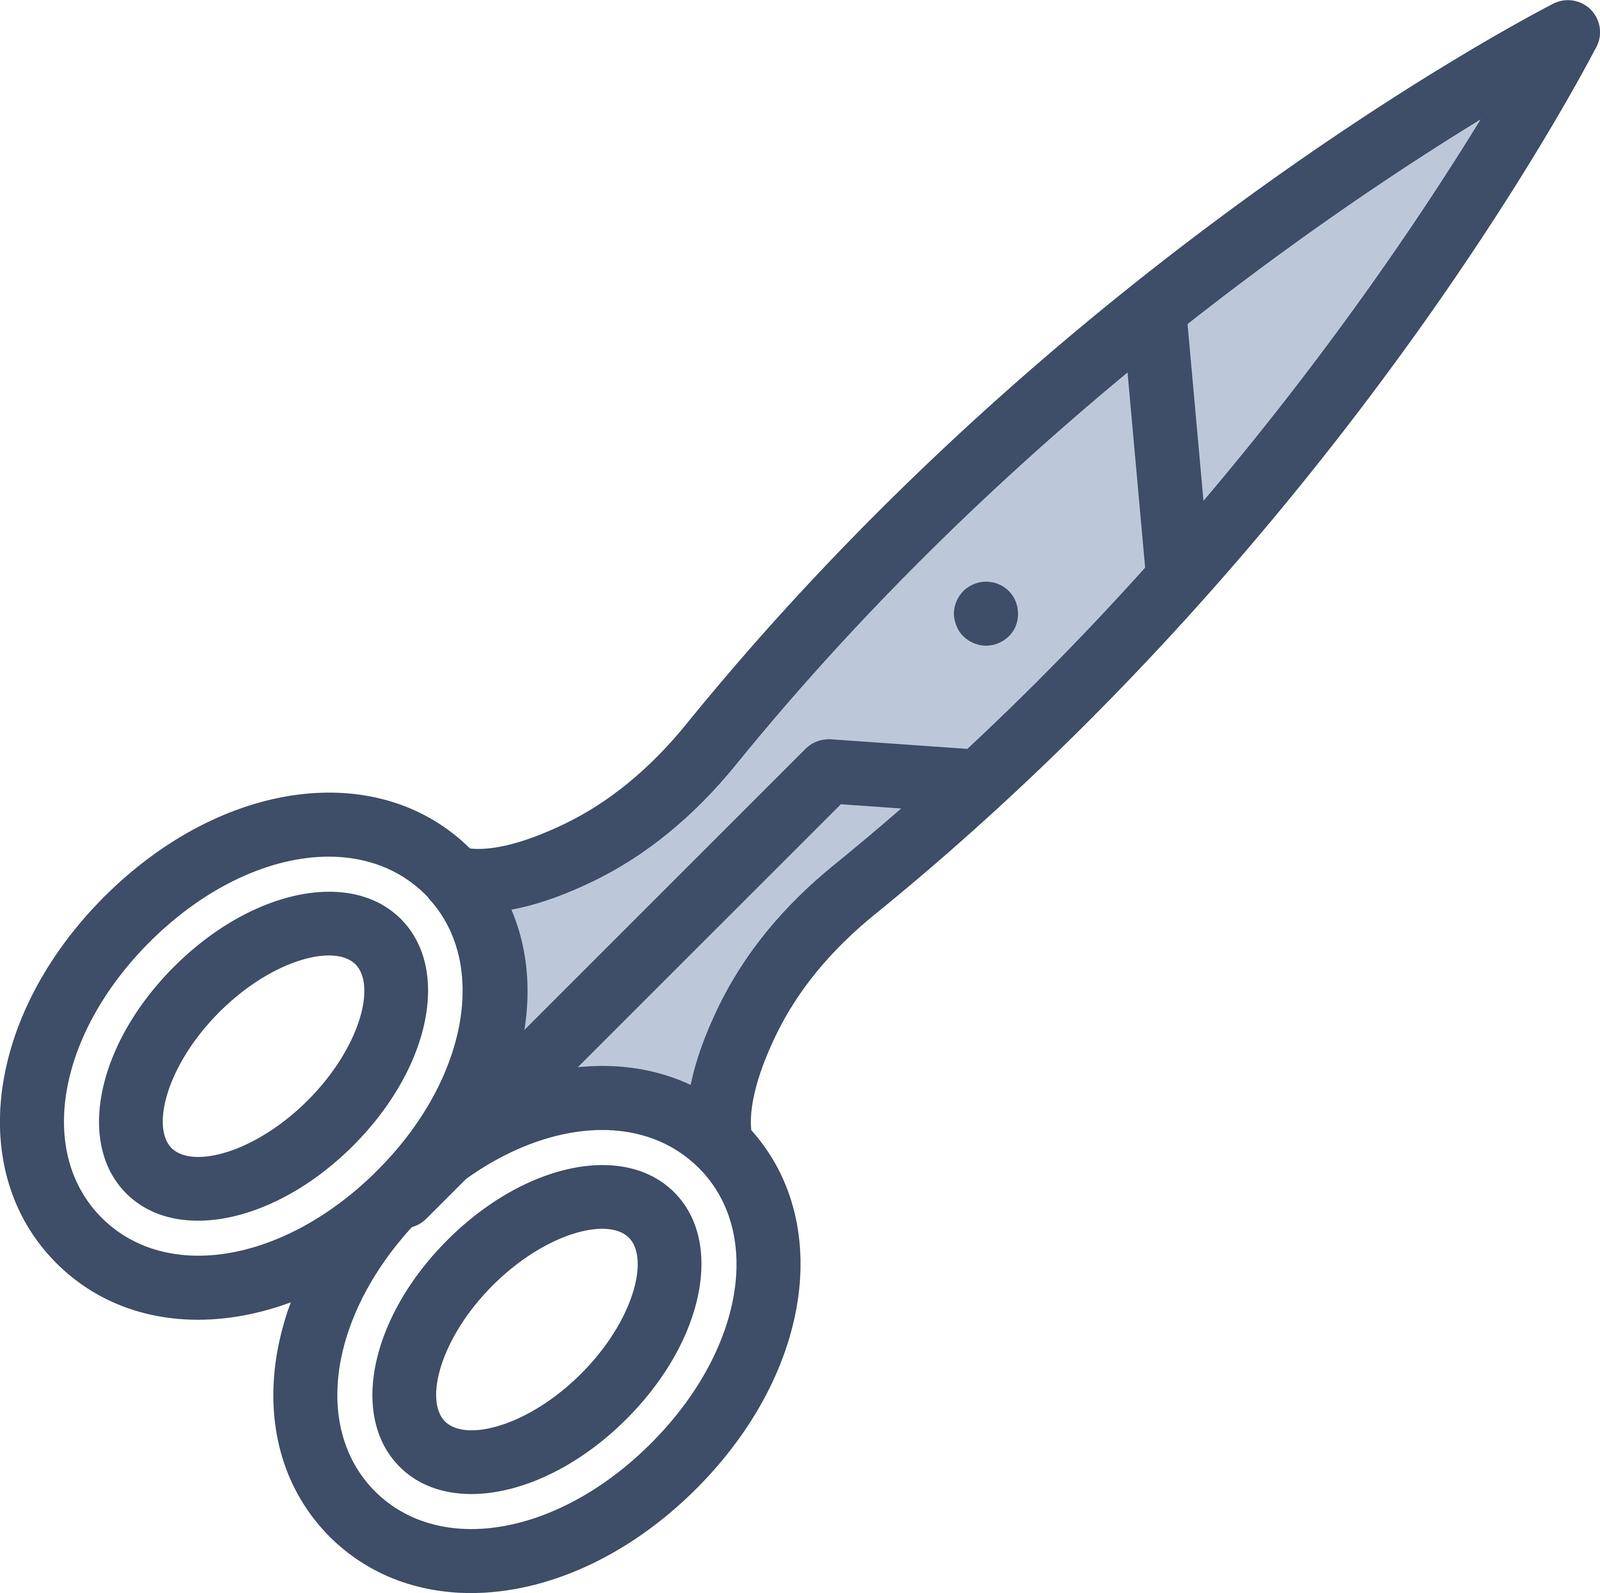 scissor by FlaticonsDesign